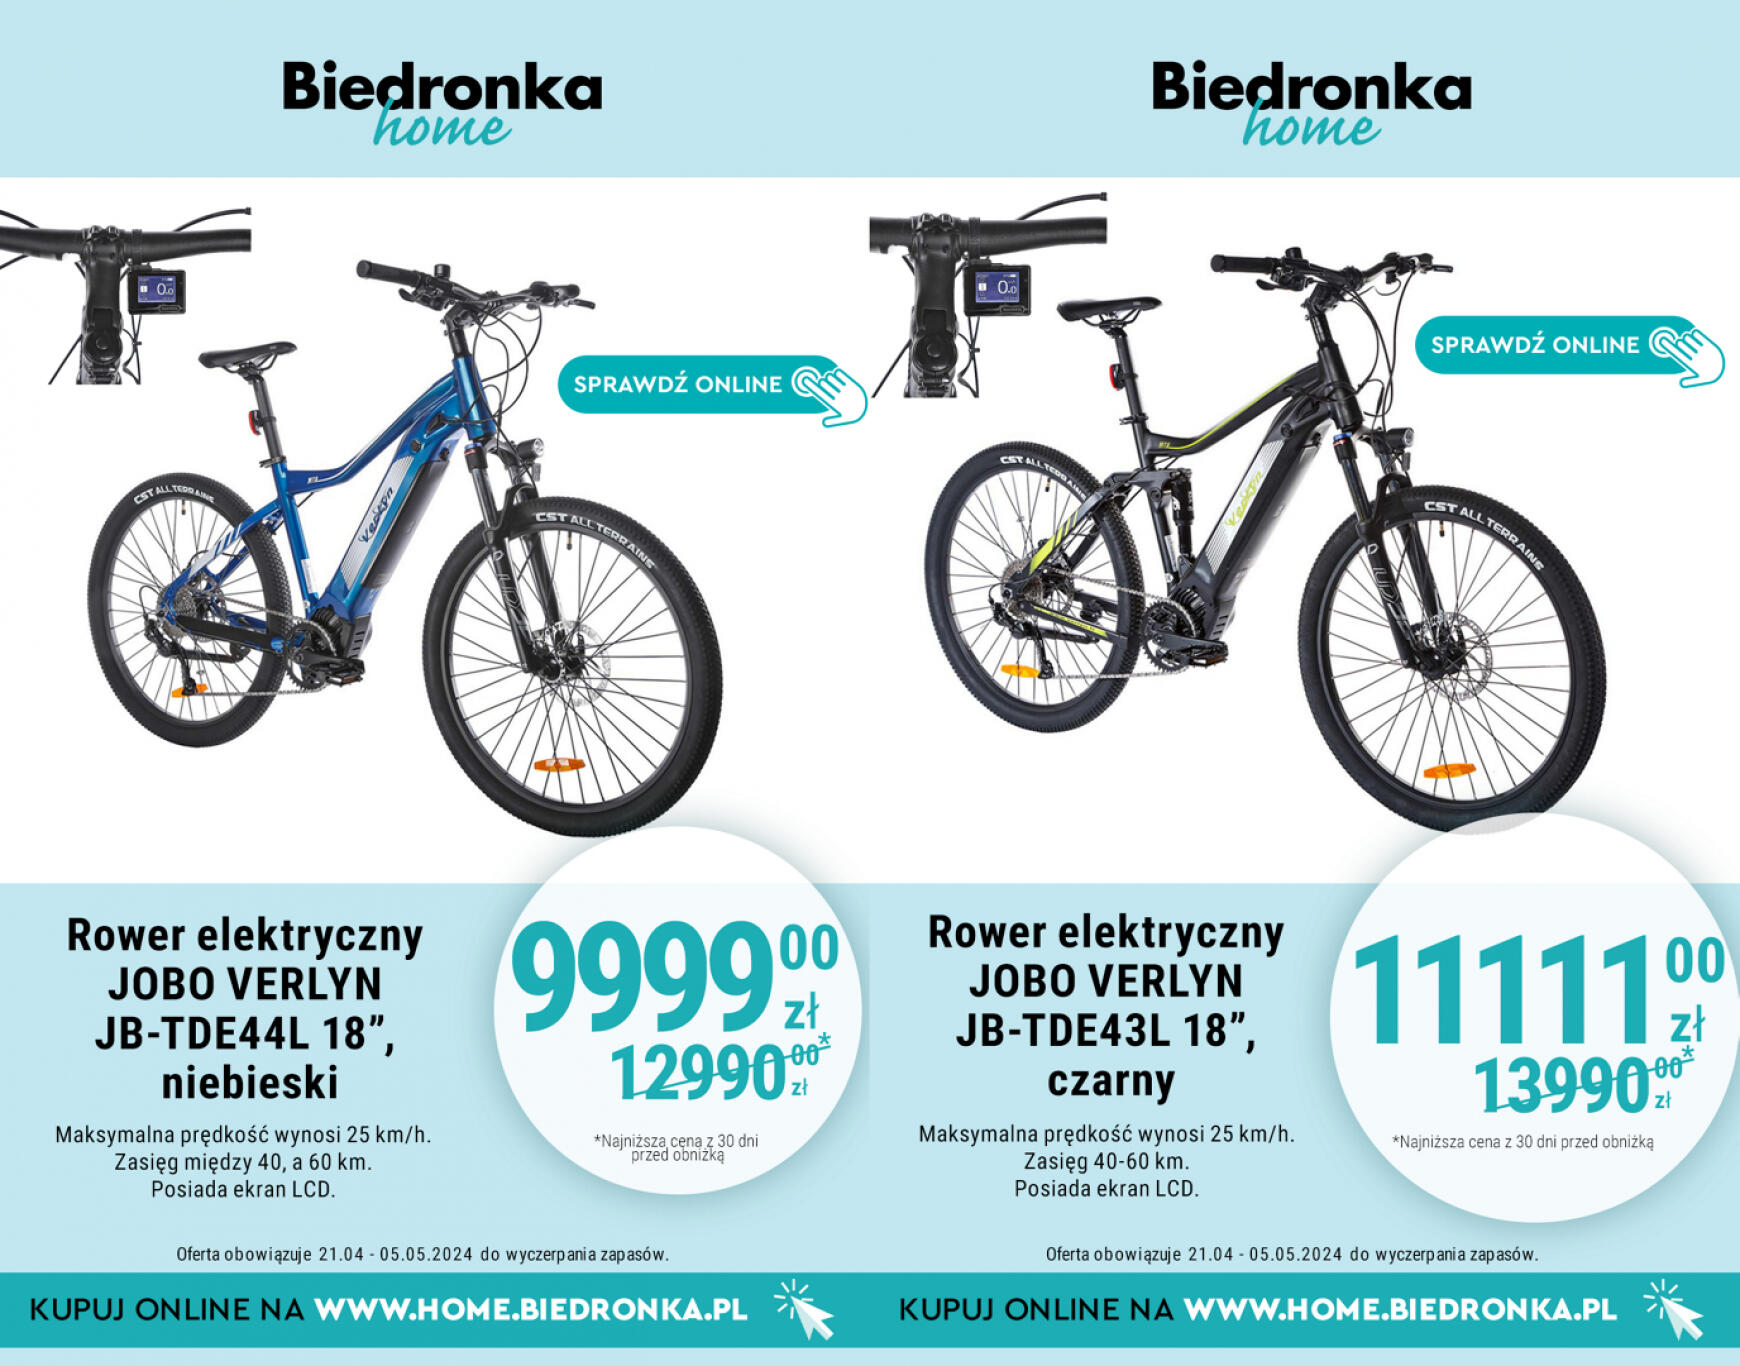 biedronka - Biedronka Home gazetka aktualna ważna od 21.04. - 12.05. - page: 5